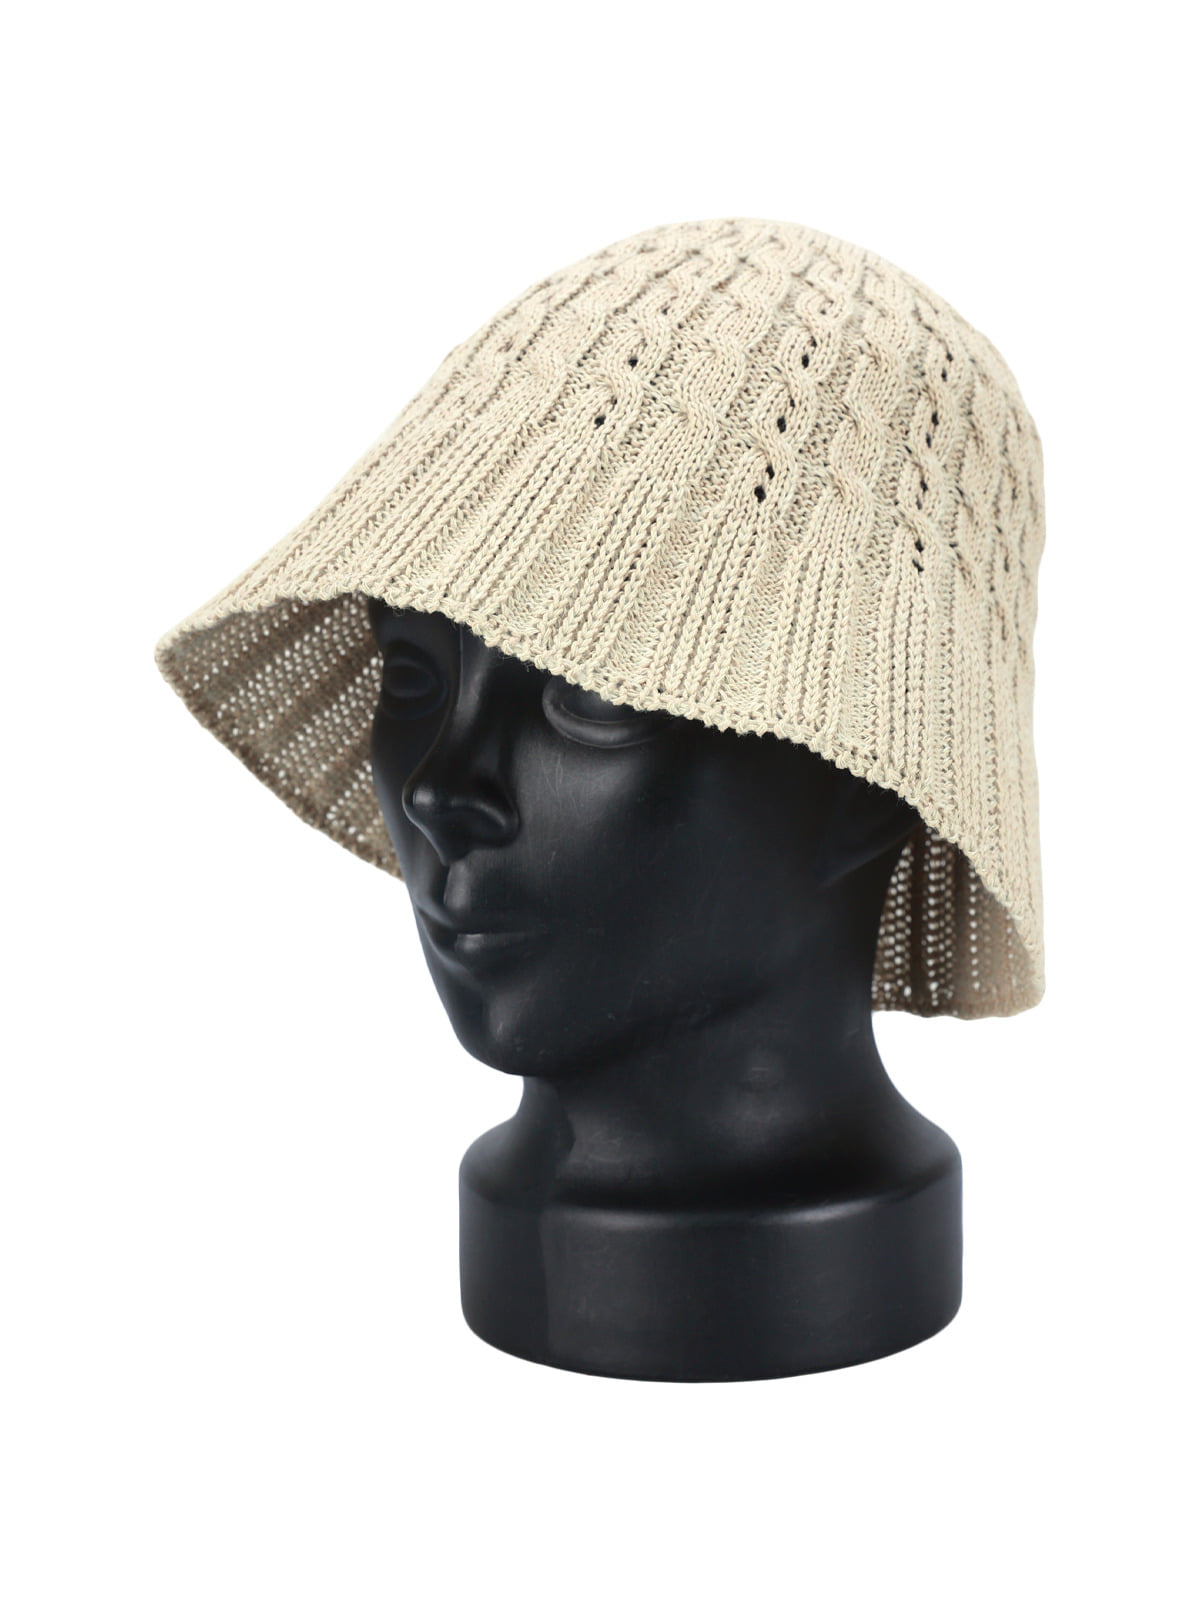 여성 벙거지 LZJ018 여름 니트 뜨개 버킷햇 모자